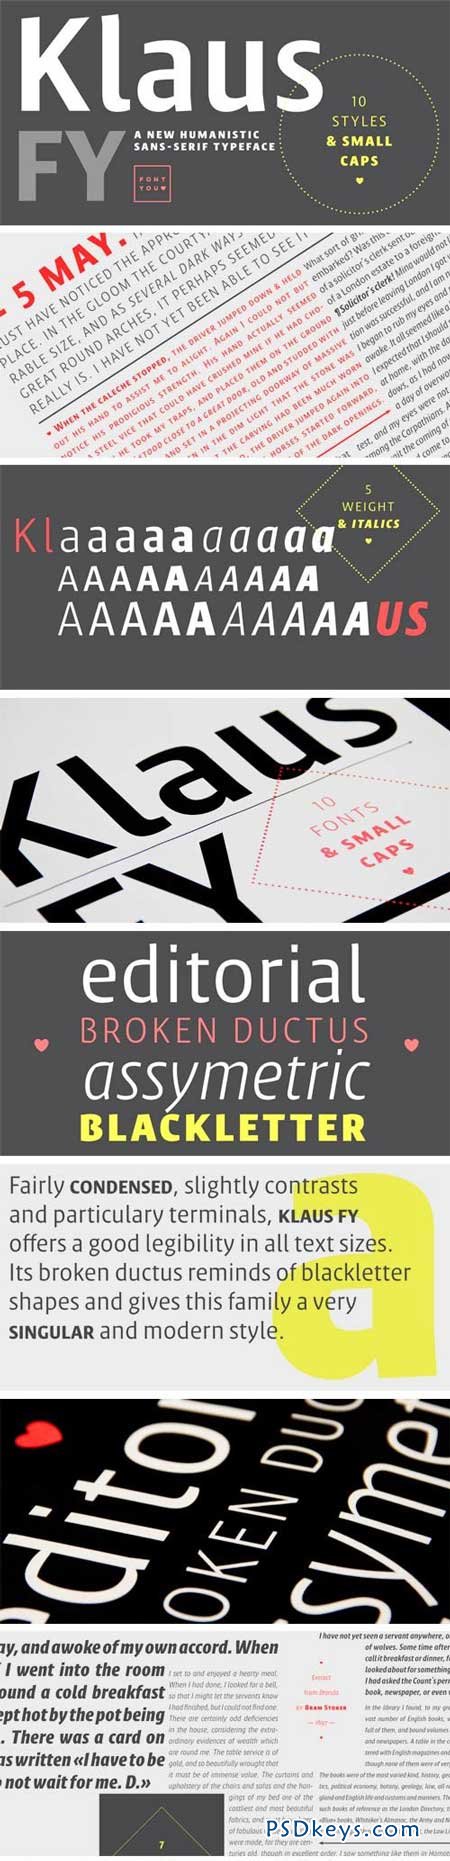 Klaus FY Font Family - 10 Fonts for $350